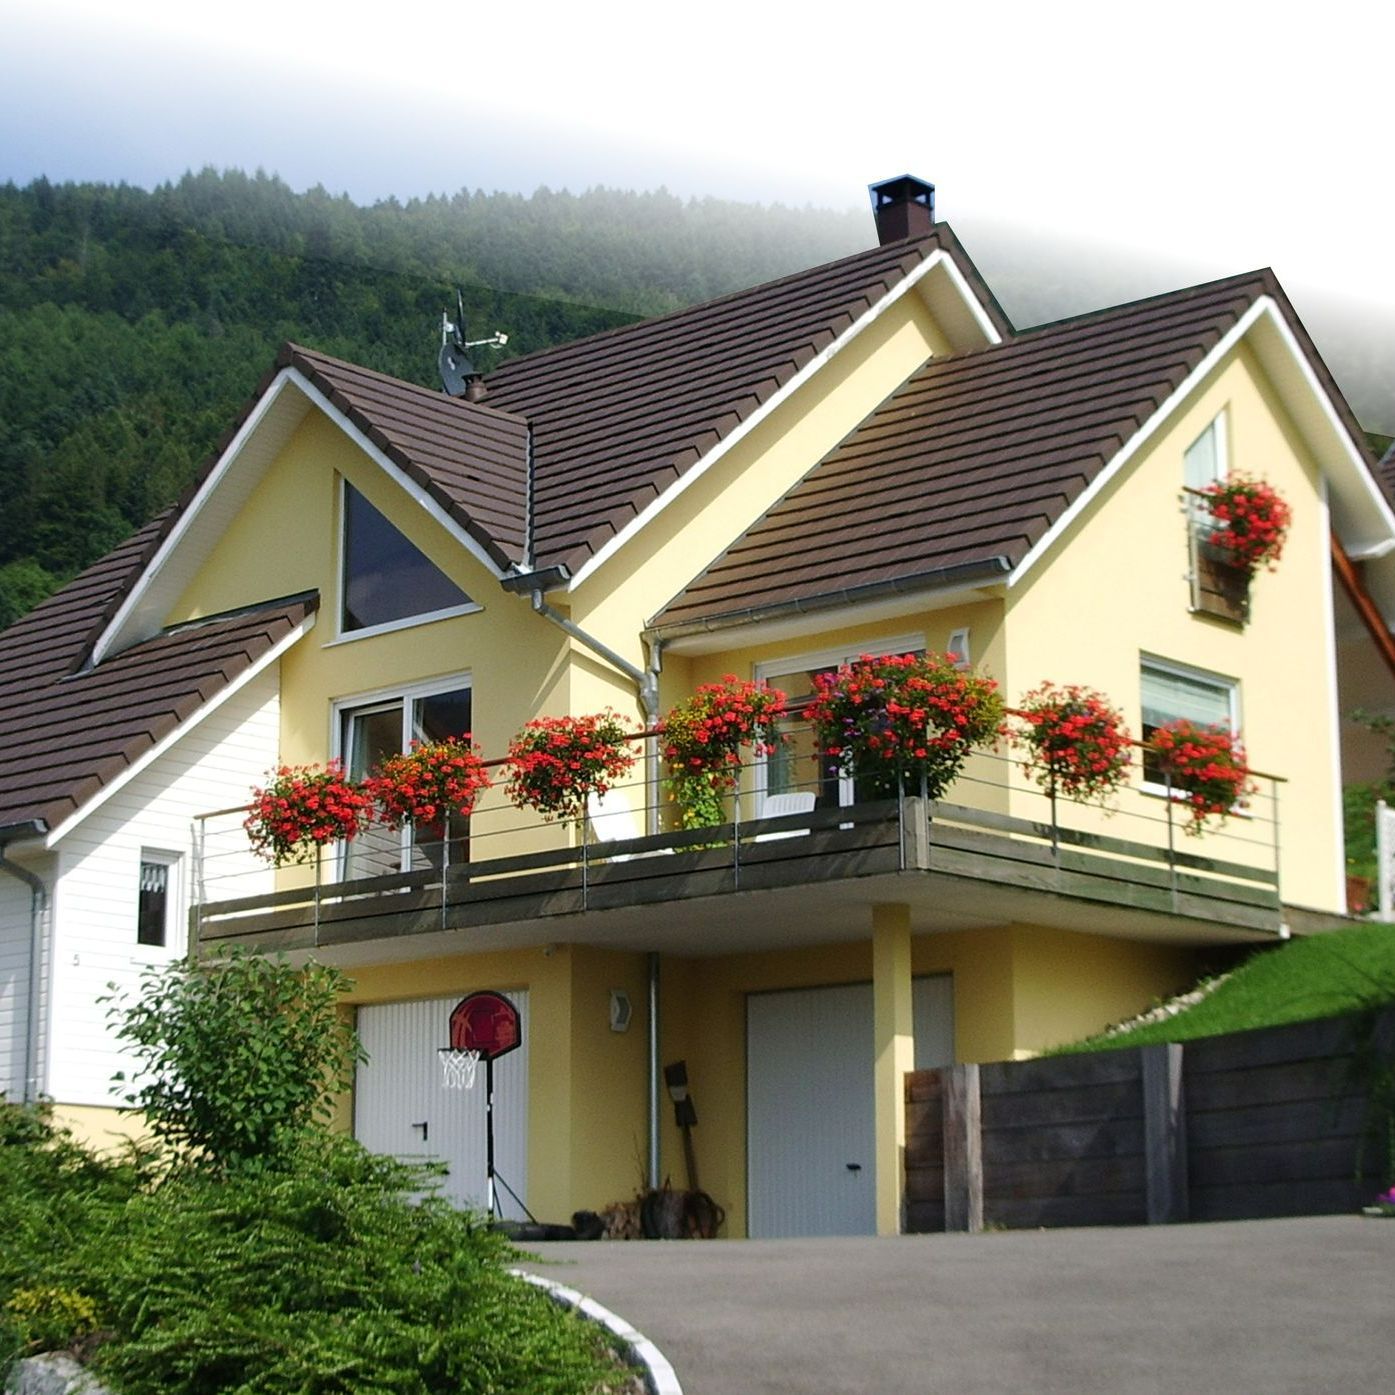 Maison à ossature en bois avec terrasse à l'étage